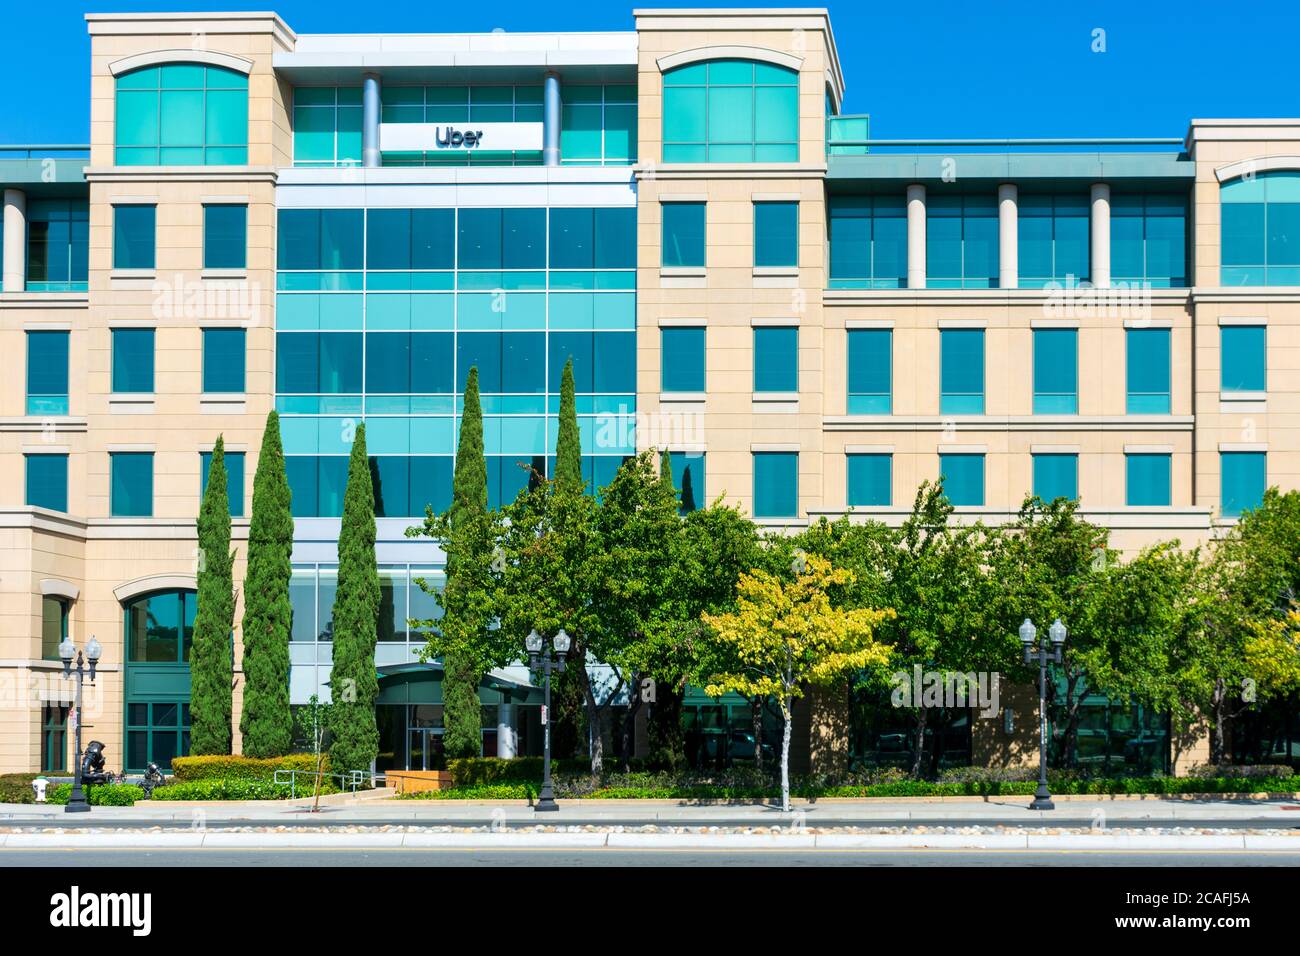 Campus Uber Silicon Valley. Uber Technologies, con sede a San Francisco, è una multinazionale americana che opera nel settore dei ride-hailing - Sunnyvale, California, USA - 202 Foto Stock